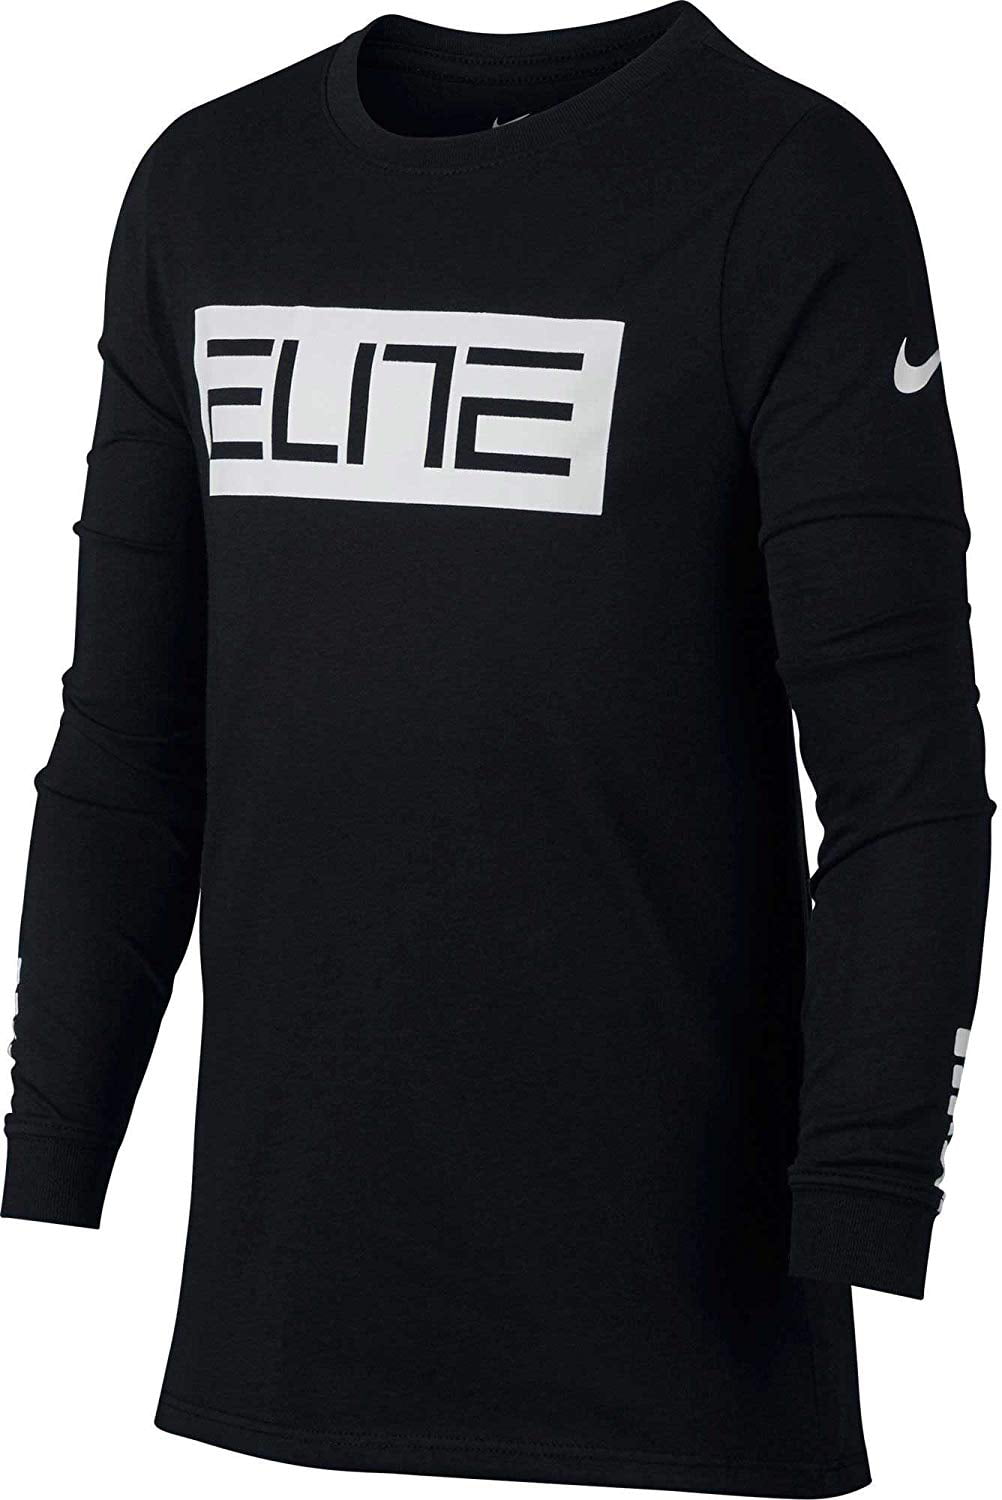 Nike Big Boys' (8-20) Dri-Fit Long Sleeve Elite T-Shirt - Walmart.com ...